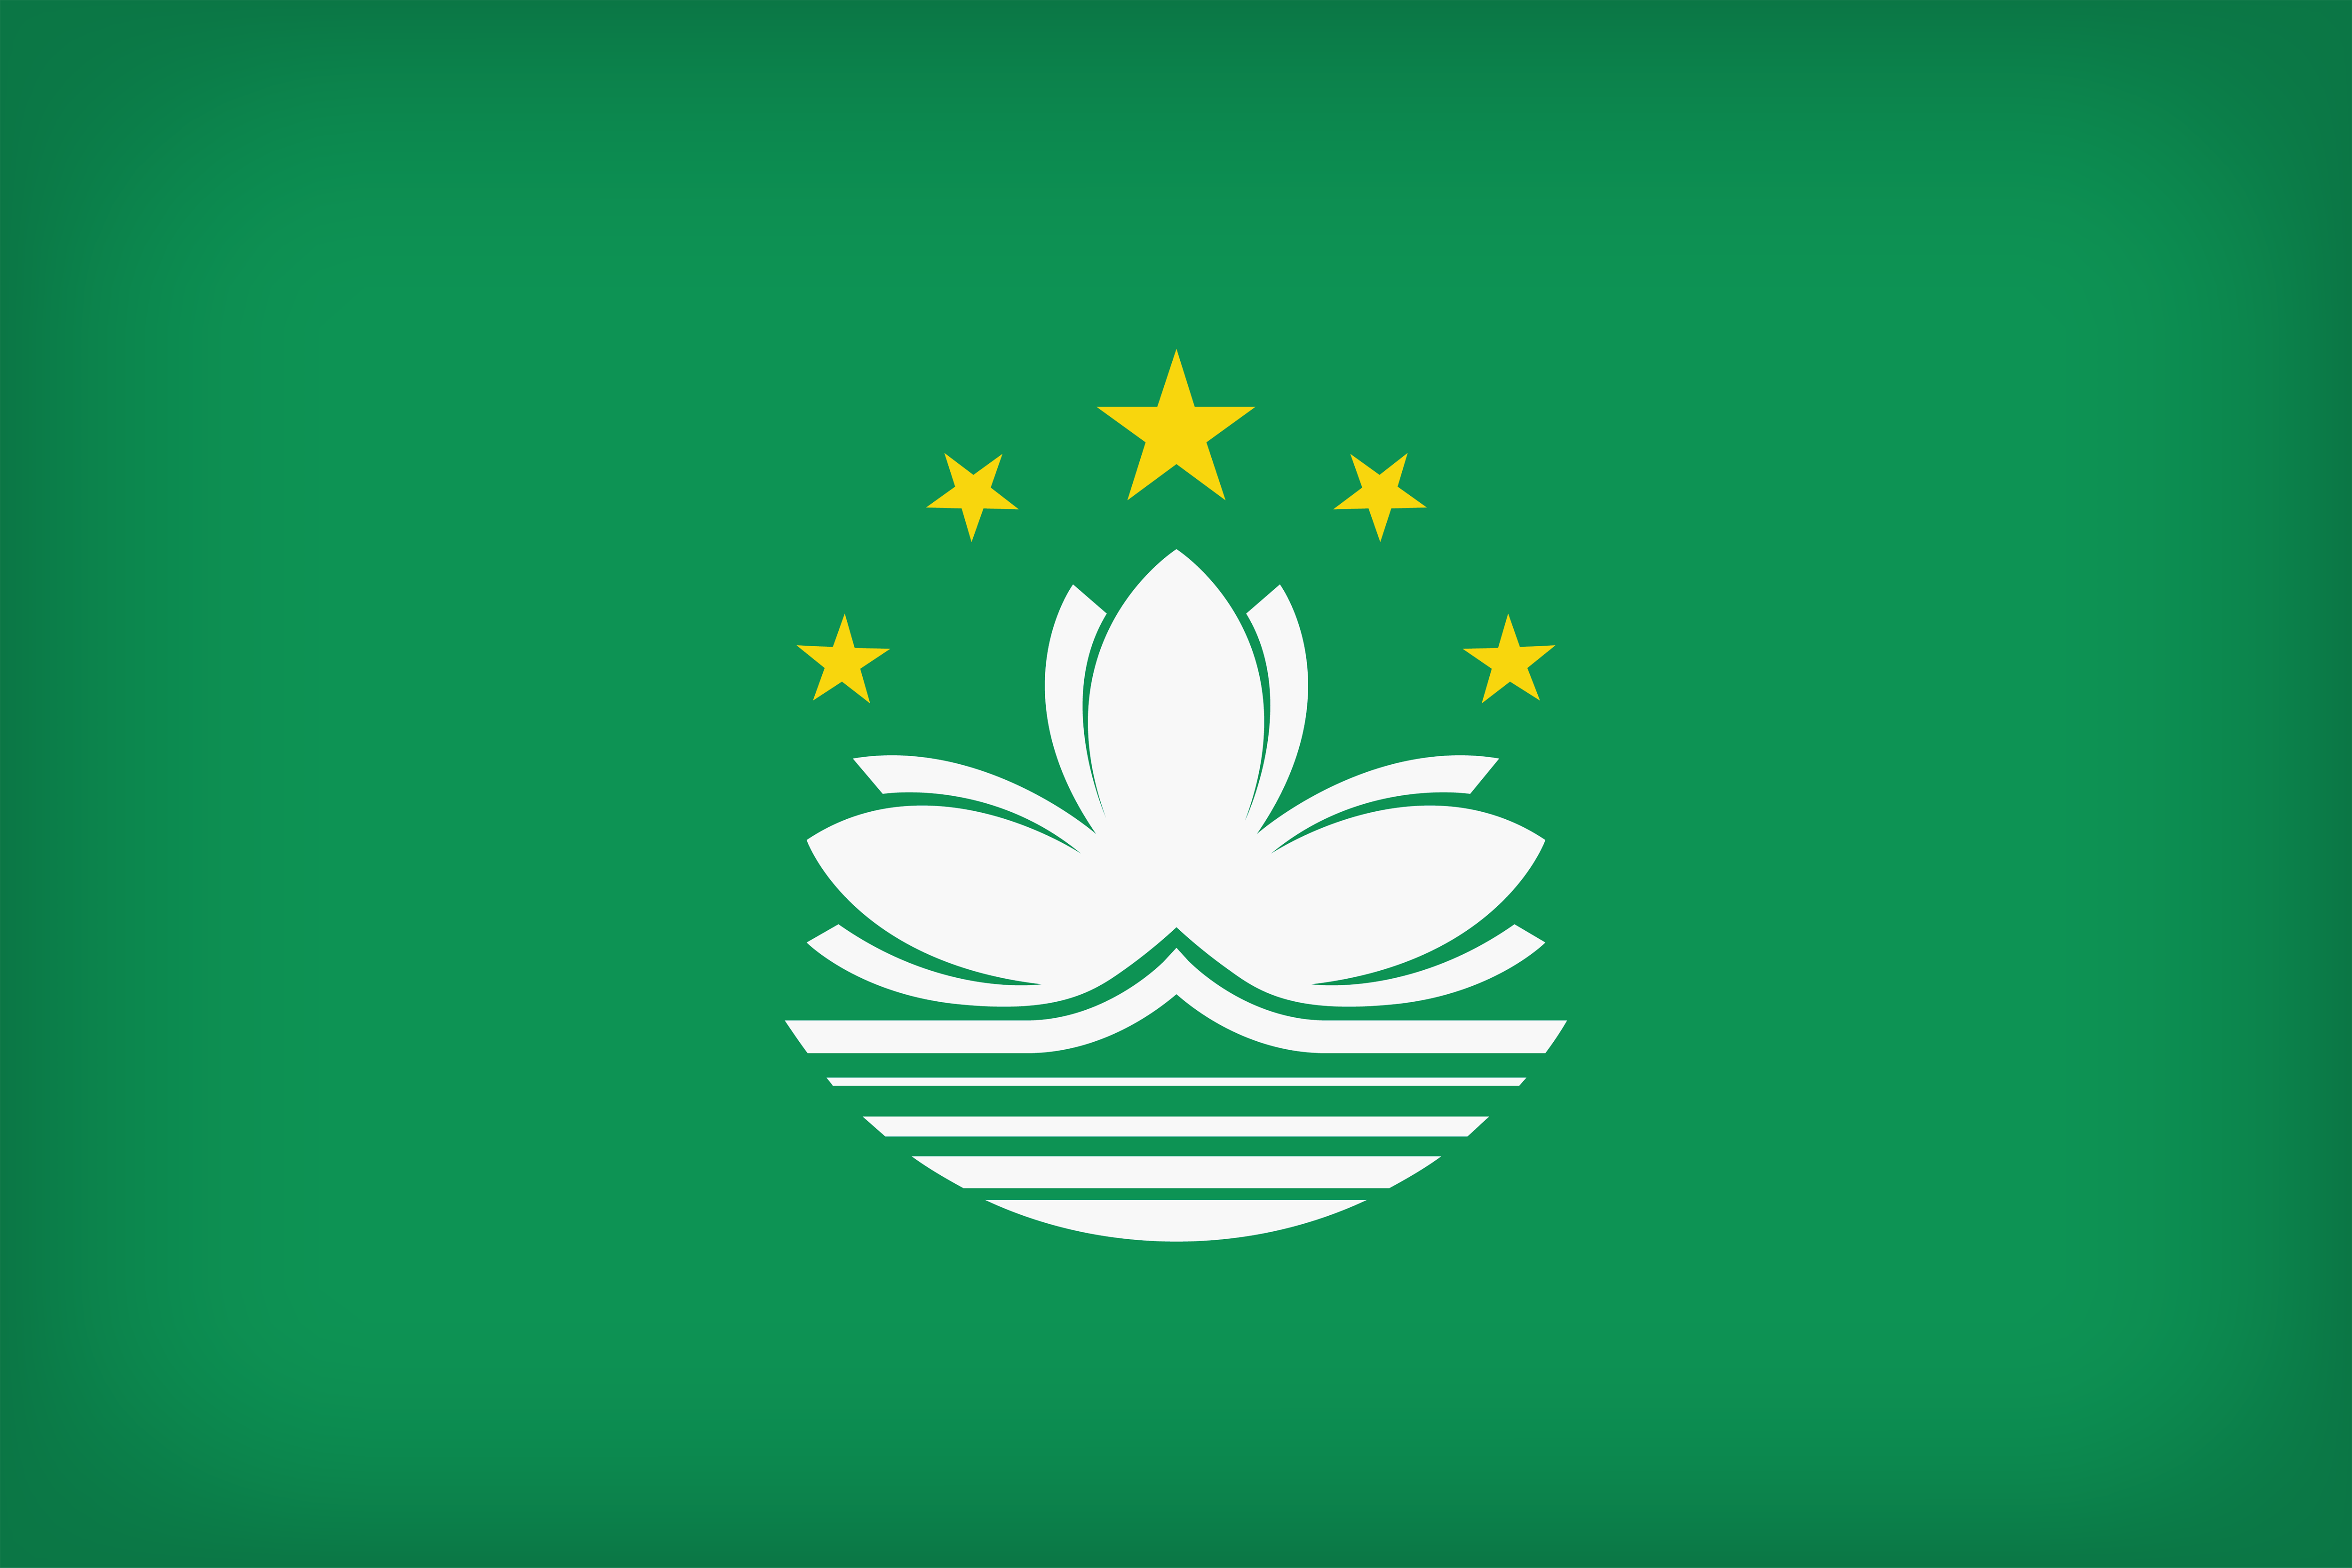 Macau Large Flag.